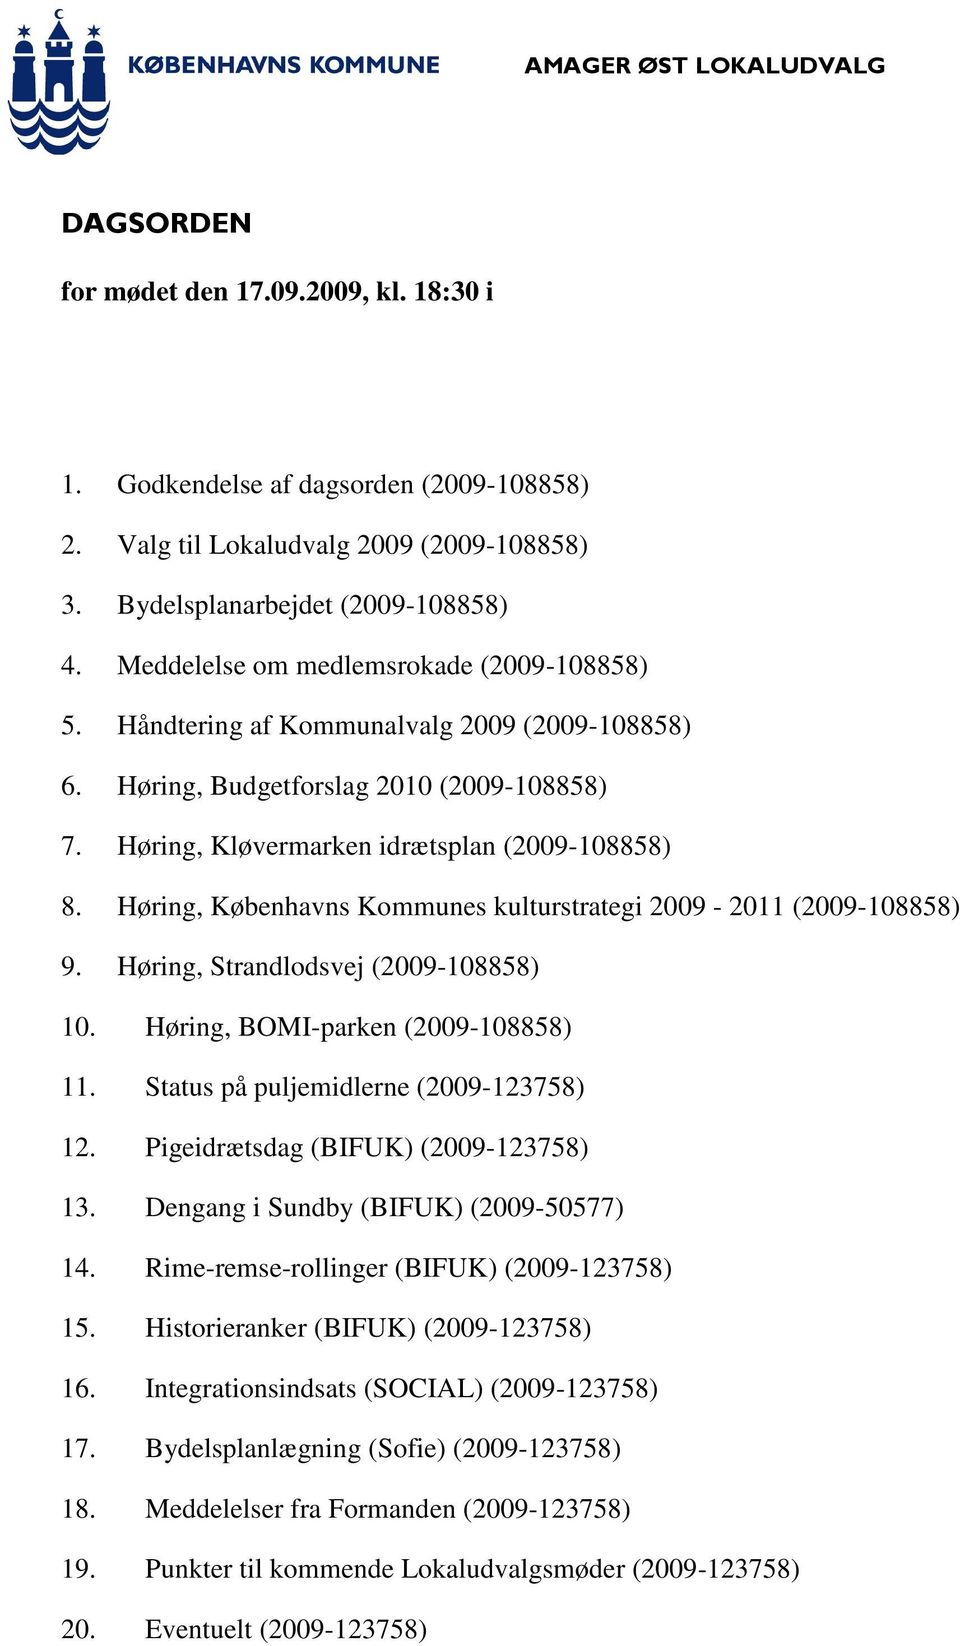 Høring, Københavns Kommunes kulturstrategi 2009-2011 (2009-108858) 9. Høring, Strandlodsvej (2009-108858) 10. Høring, BOMI-parken (2009-108858) 11. Status på puljemidlerne (2009-123758) 12.